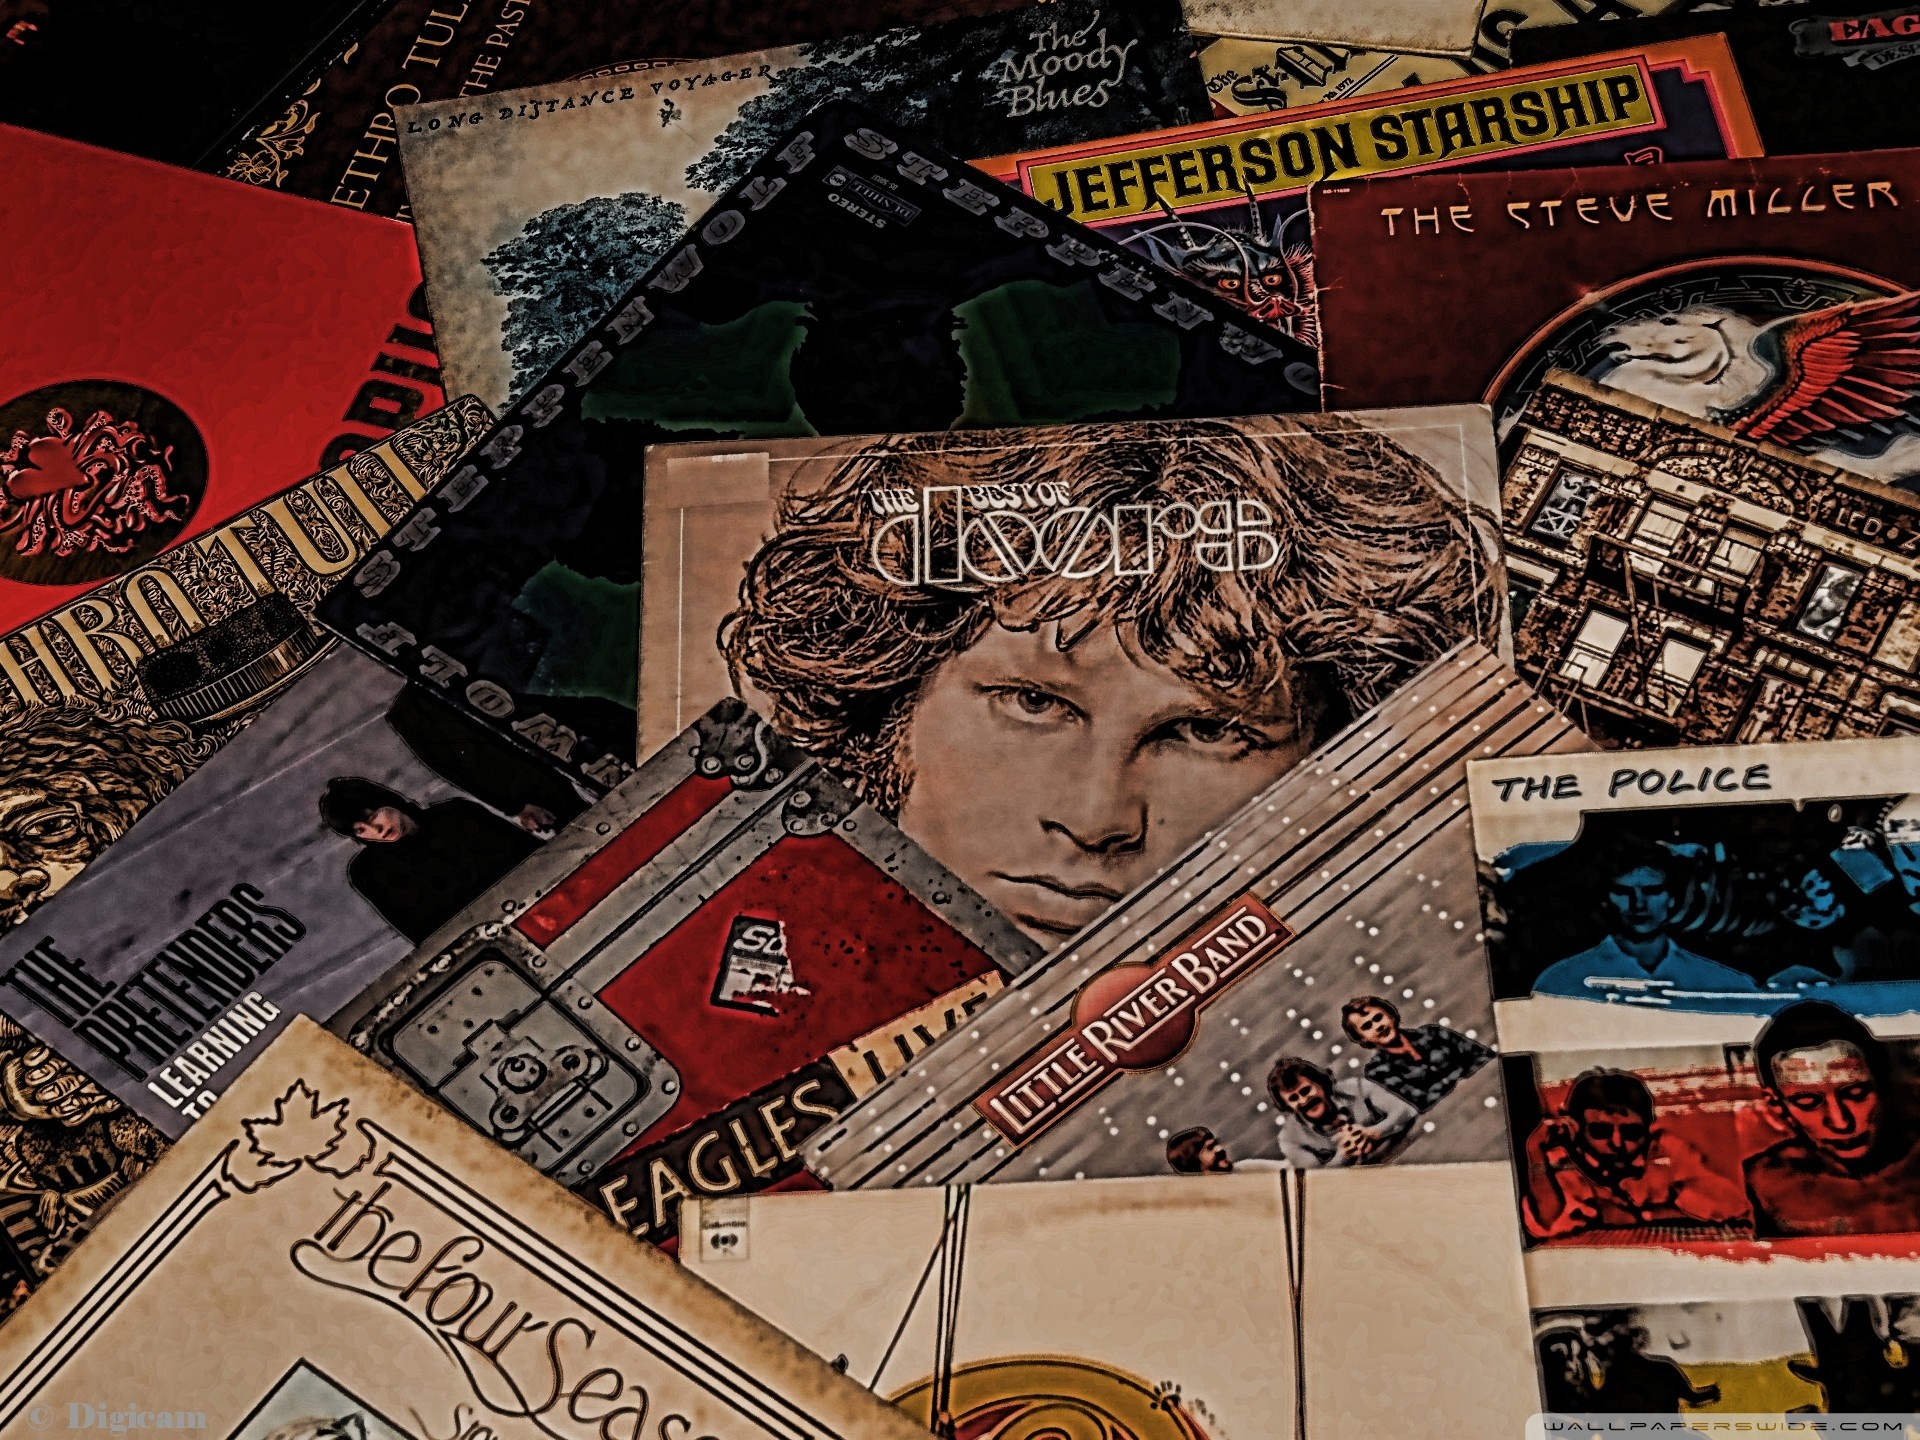 47+] Classic Rock Album Covers Wallpaper - WallpaperSafari